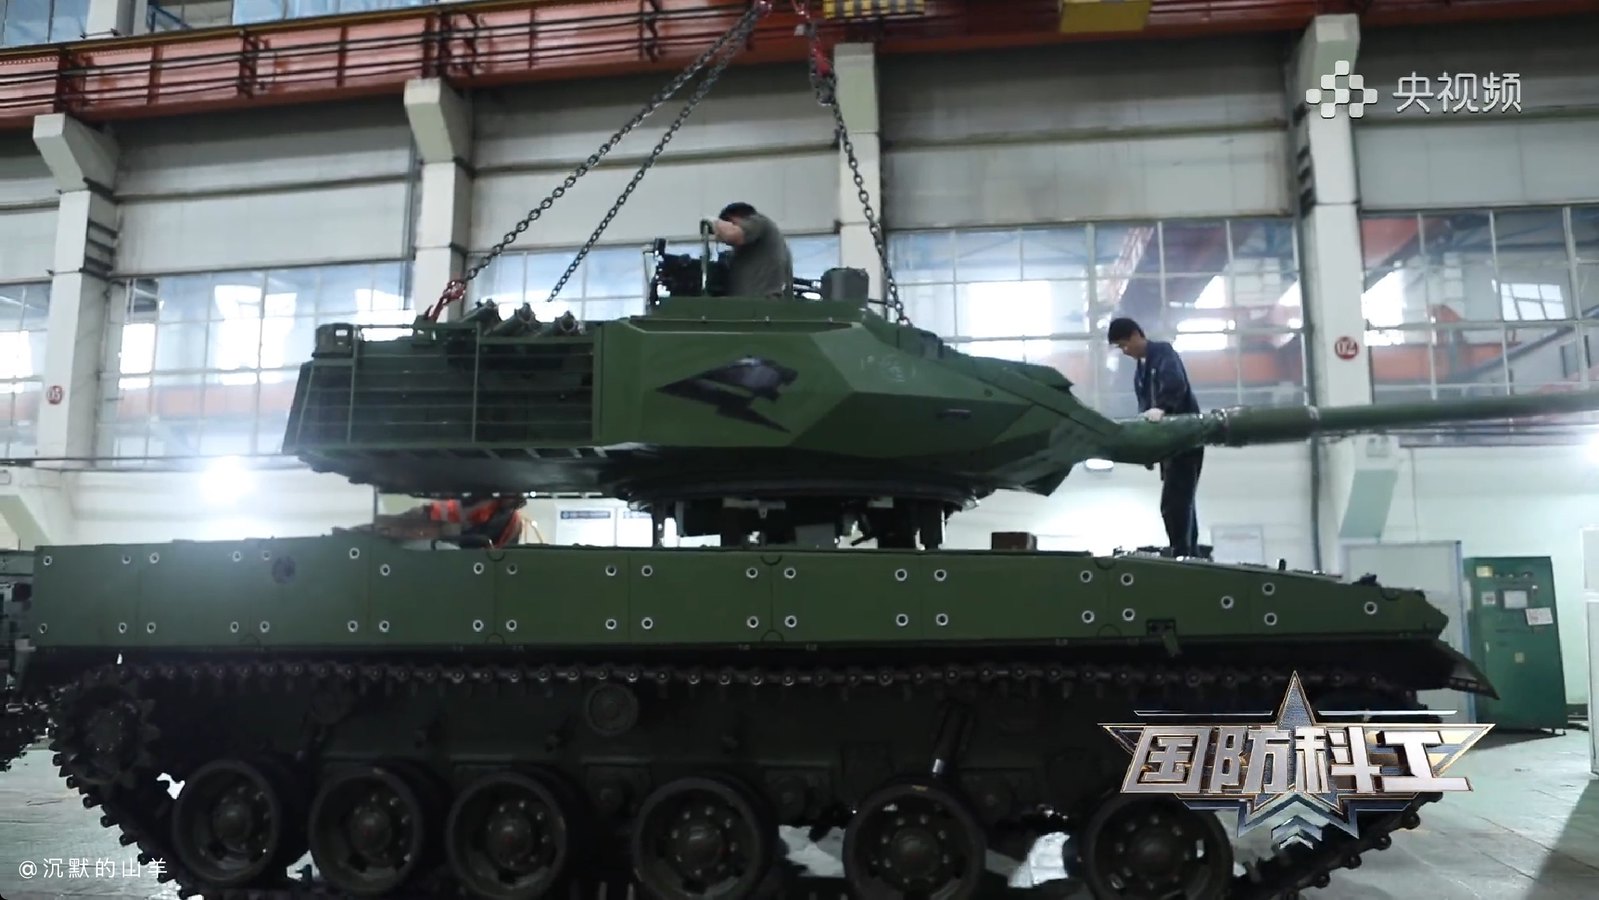 Тип 15 no 53. Китайский Type 15. Тип-15 китайский танк. Китайский лёгкий танк Type-15. Type 15/ZTQ-15.